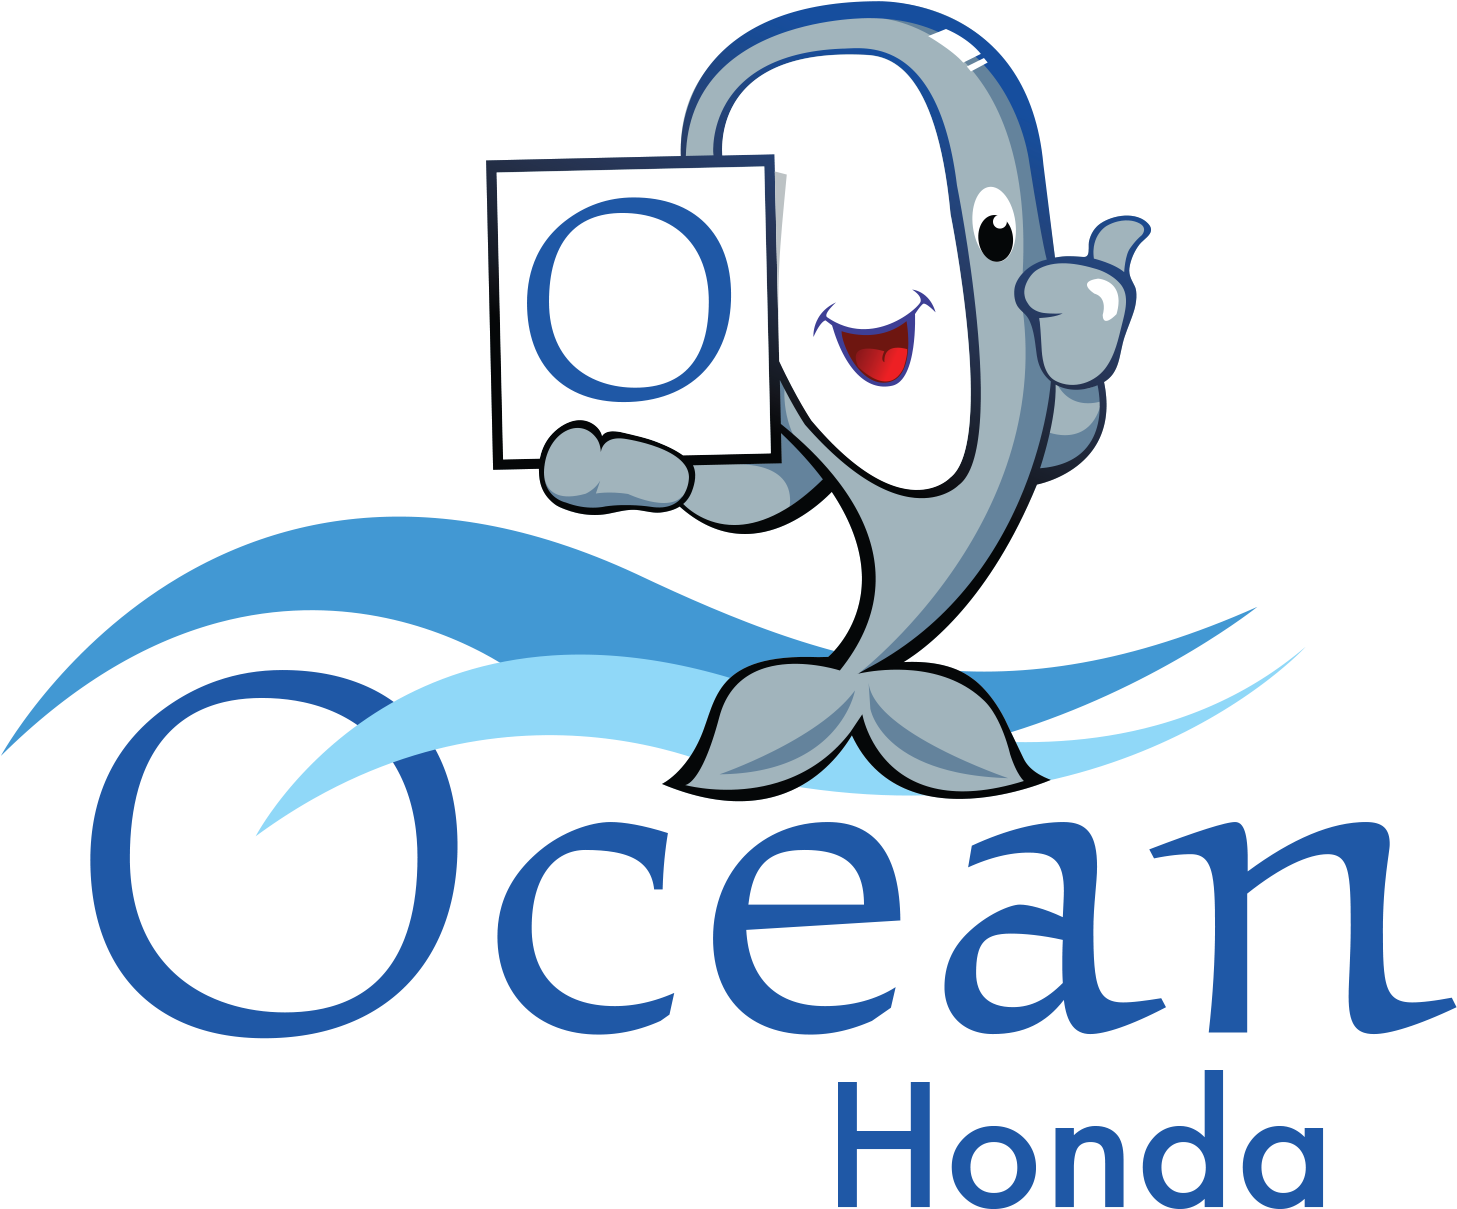 Honda - Ocean Honda Santa Cruz (1500x1298), Png Download